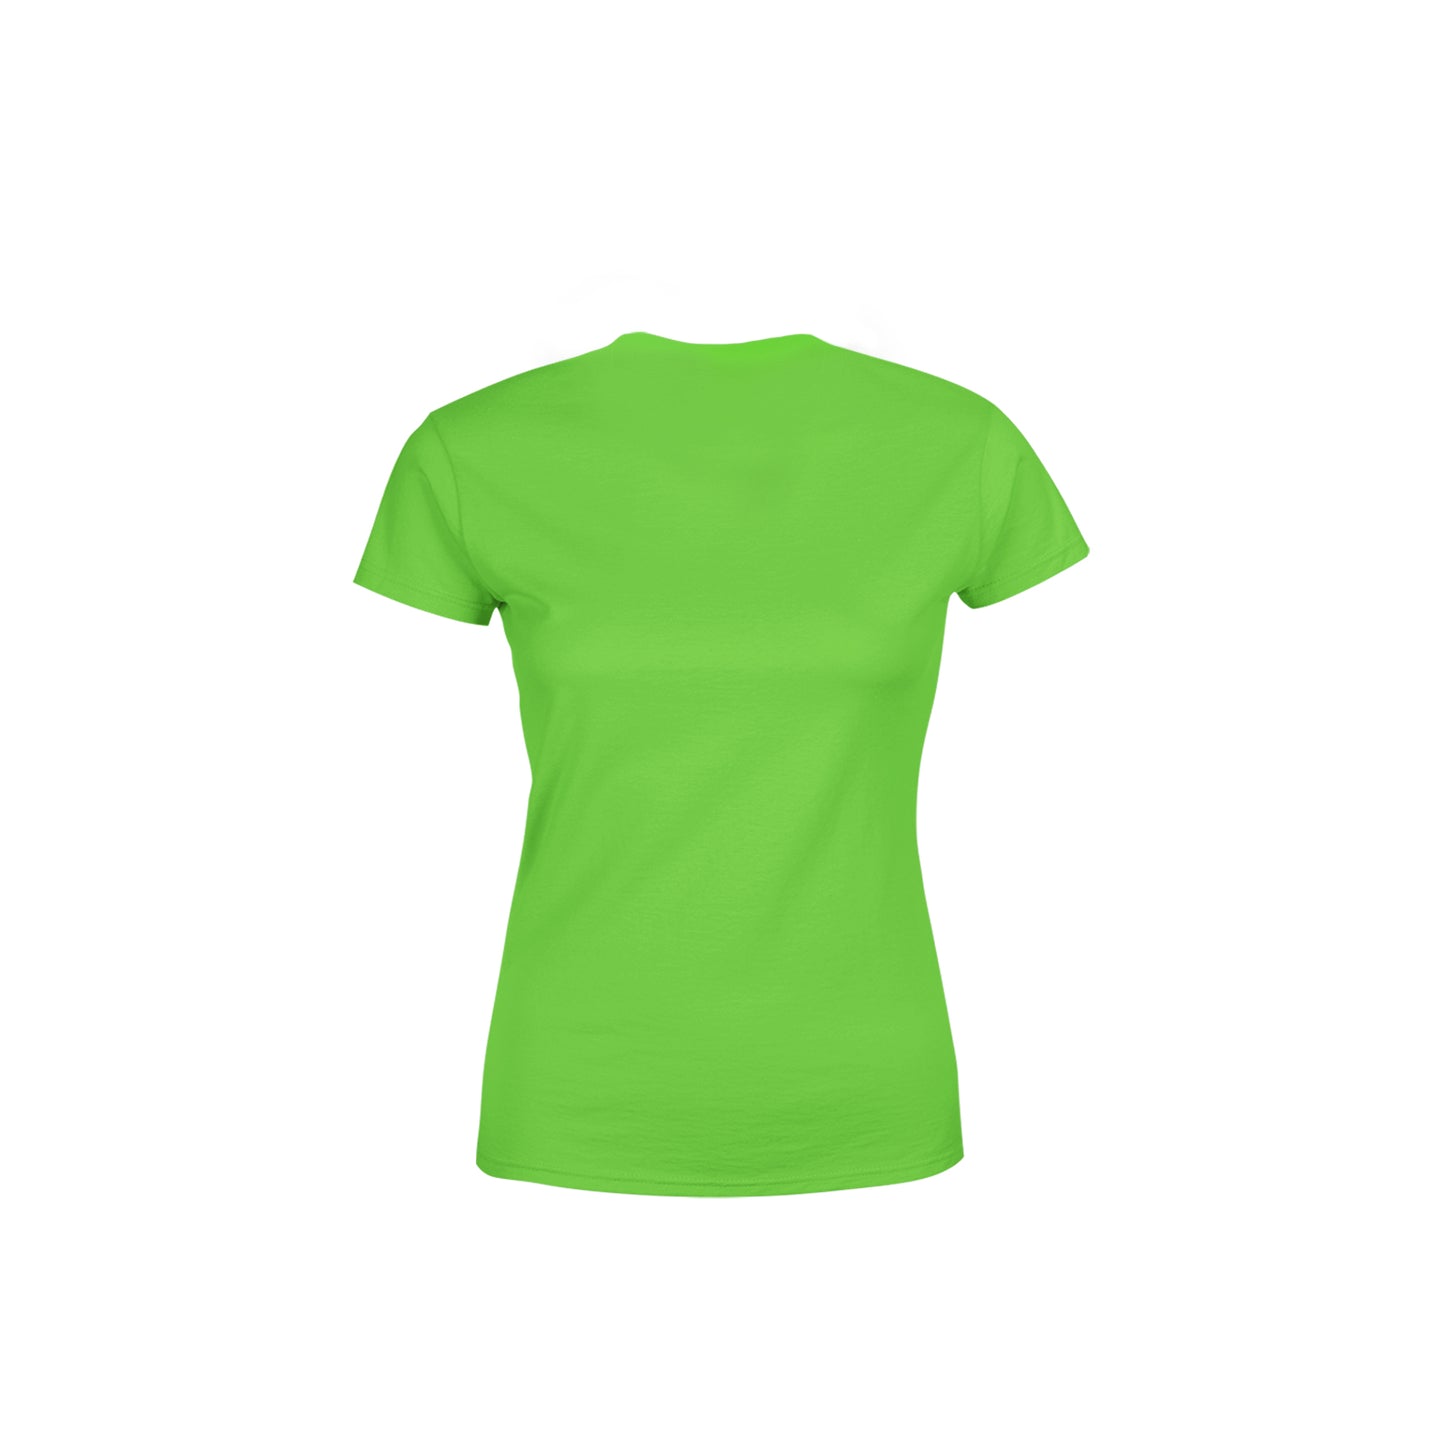 46 Number Women's T-Shirt (Liril Green)